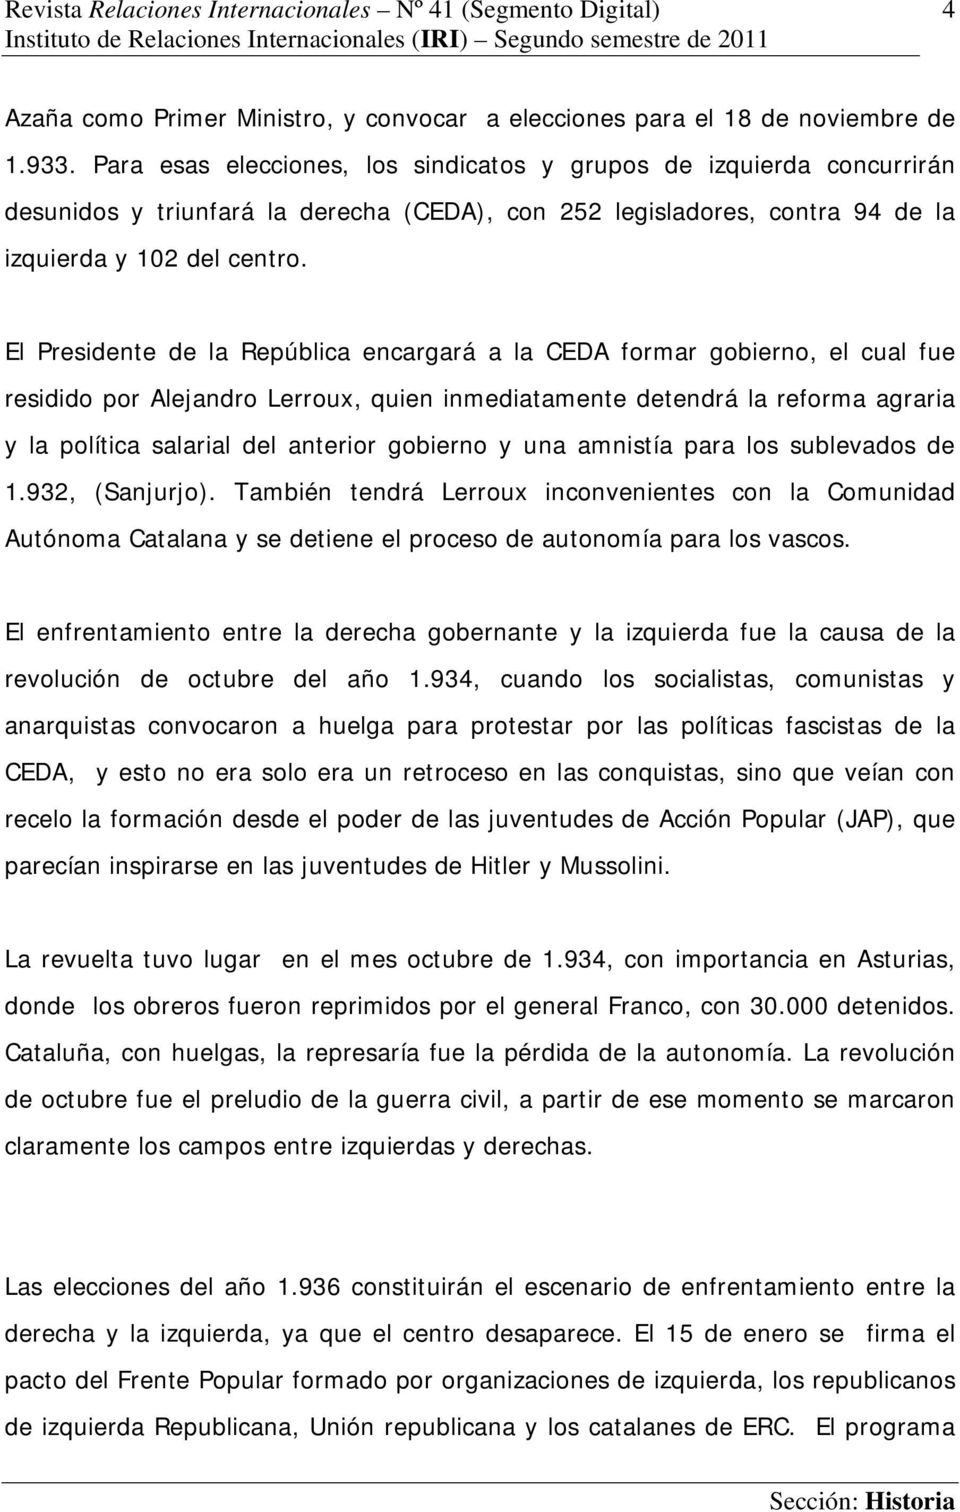 El Presidente de la República encargará a la CEDA formar gobierno, el cual fue residido por Alejandro Lerroux, quien inmediatamente detendrá la reforma agraria y la política salarial del anterior